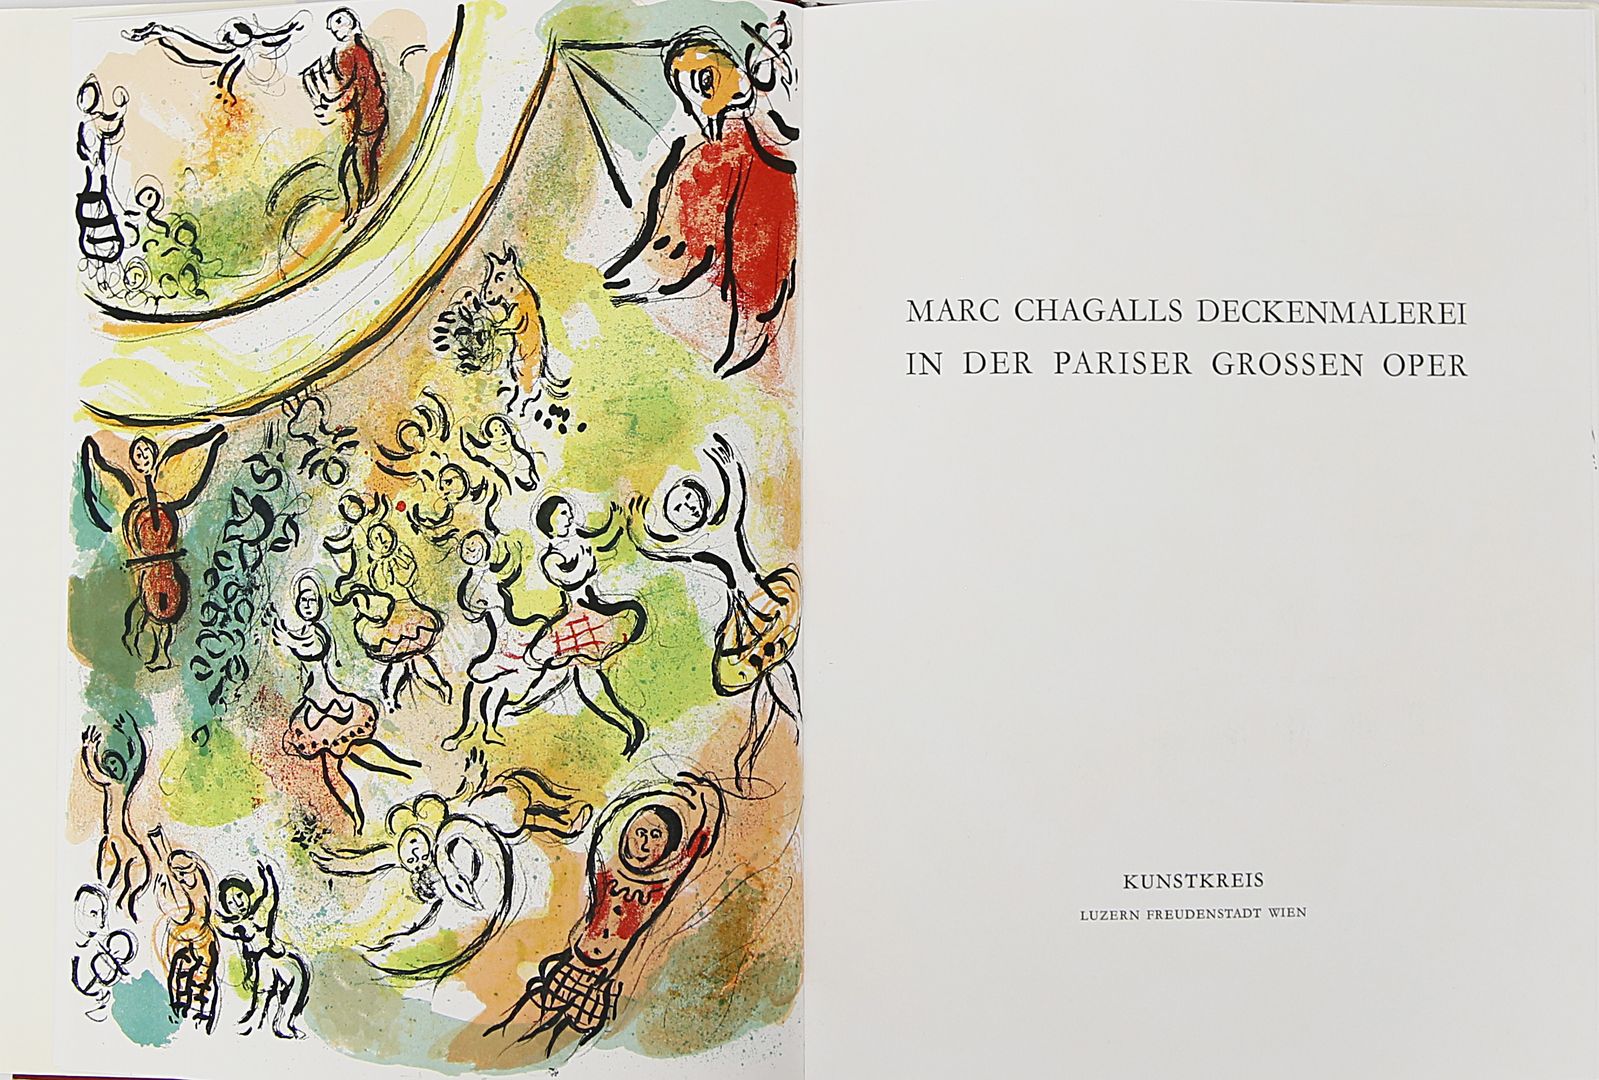 Buch "Marc Chagalls Deckenmalerei in der Pariser Oper".